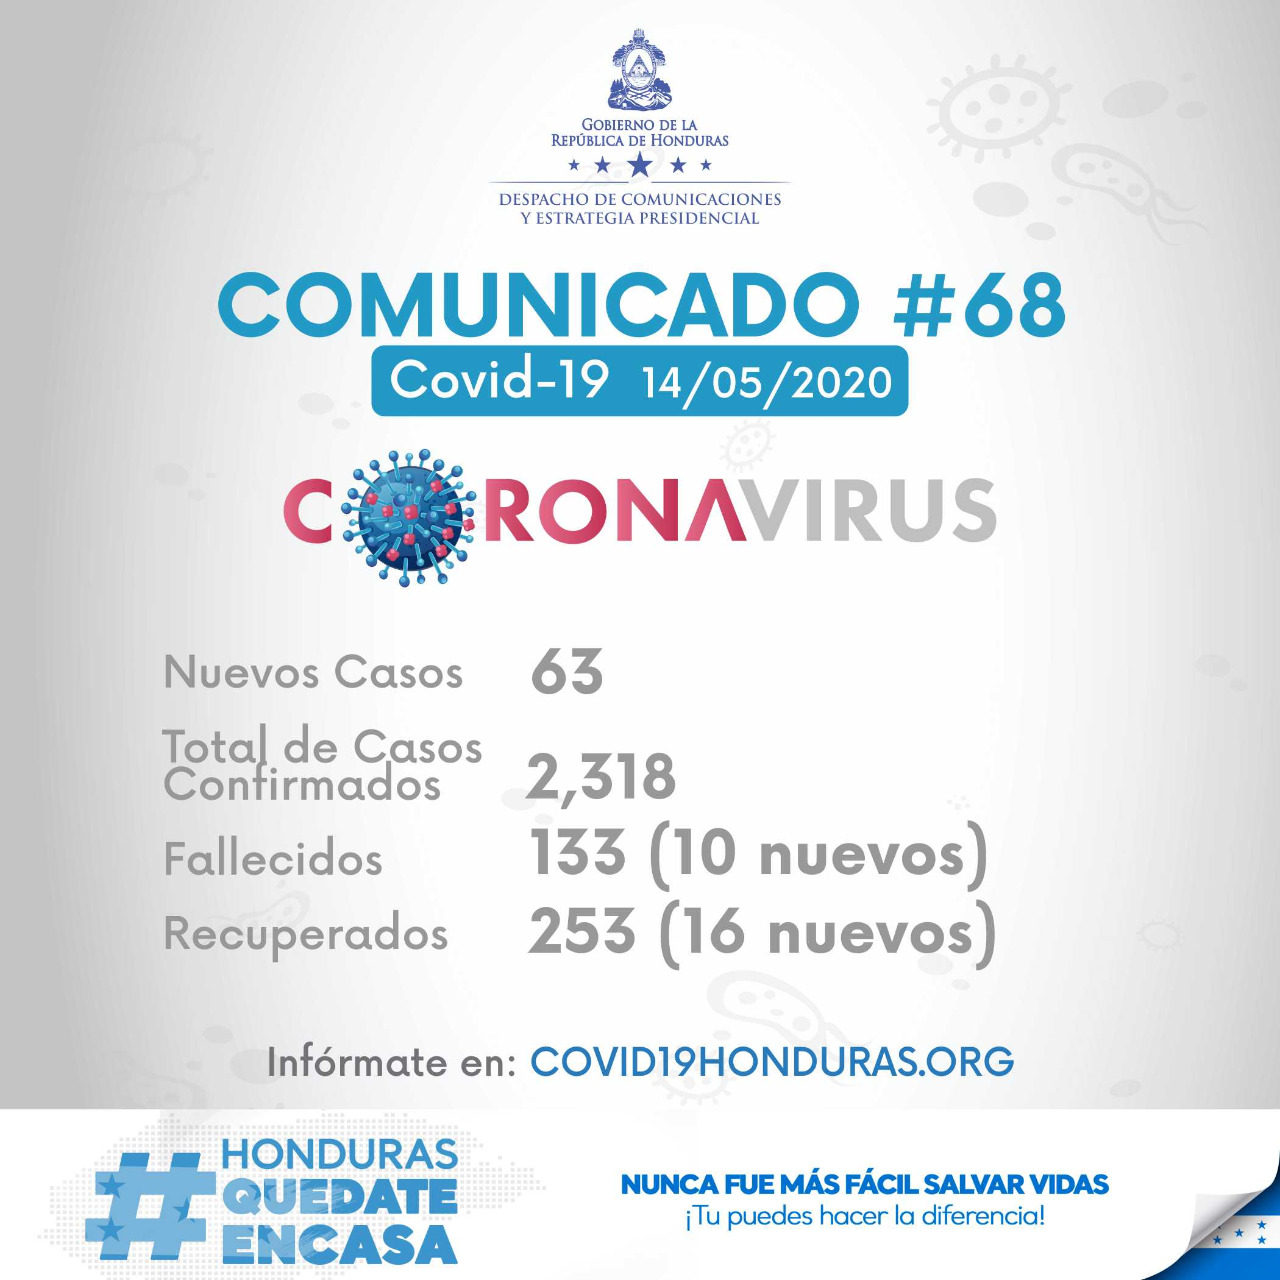 Se reporta un caso de coronavirus en Santiago de Puringla, La Paz. En total en Honduras 2,318 casos